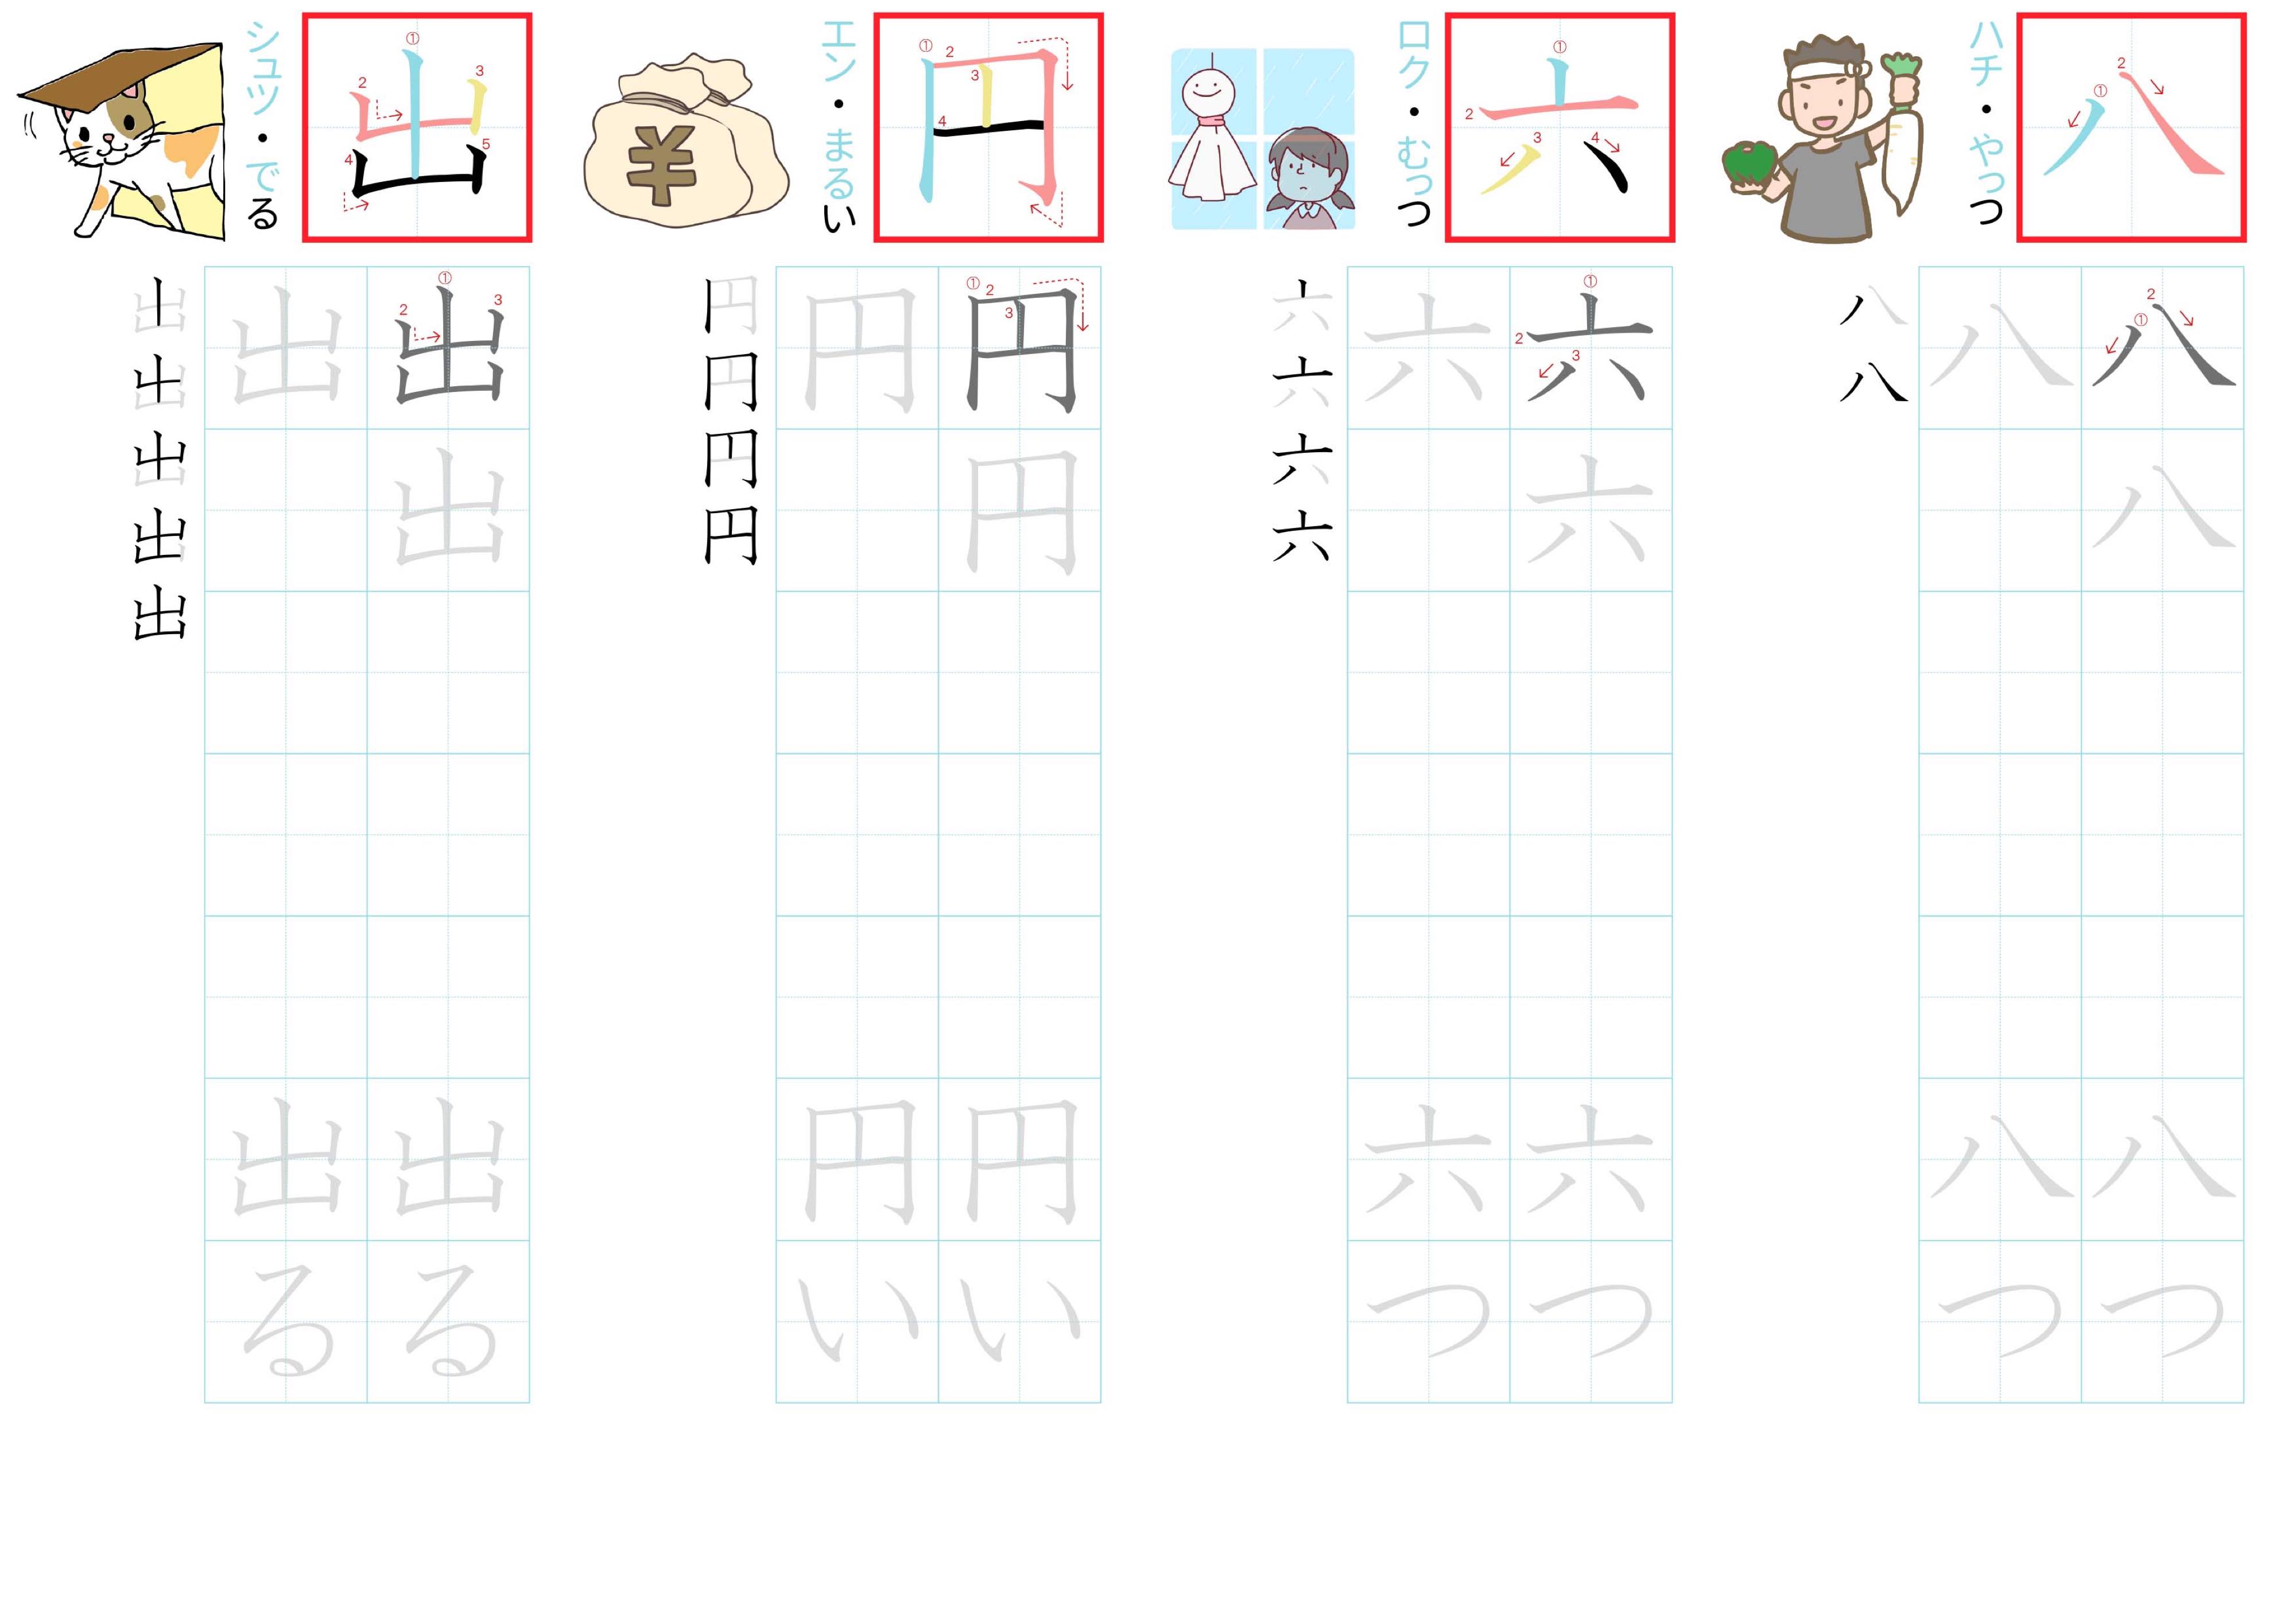 kanji-practice-card-n5-japanese-005